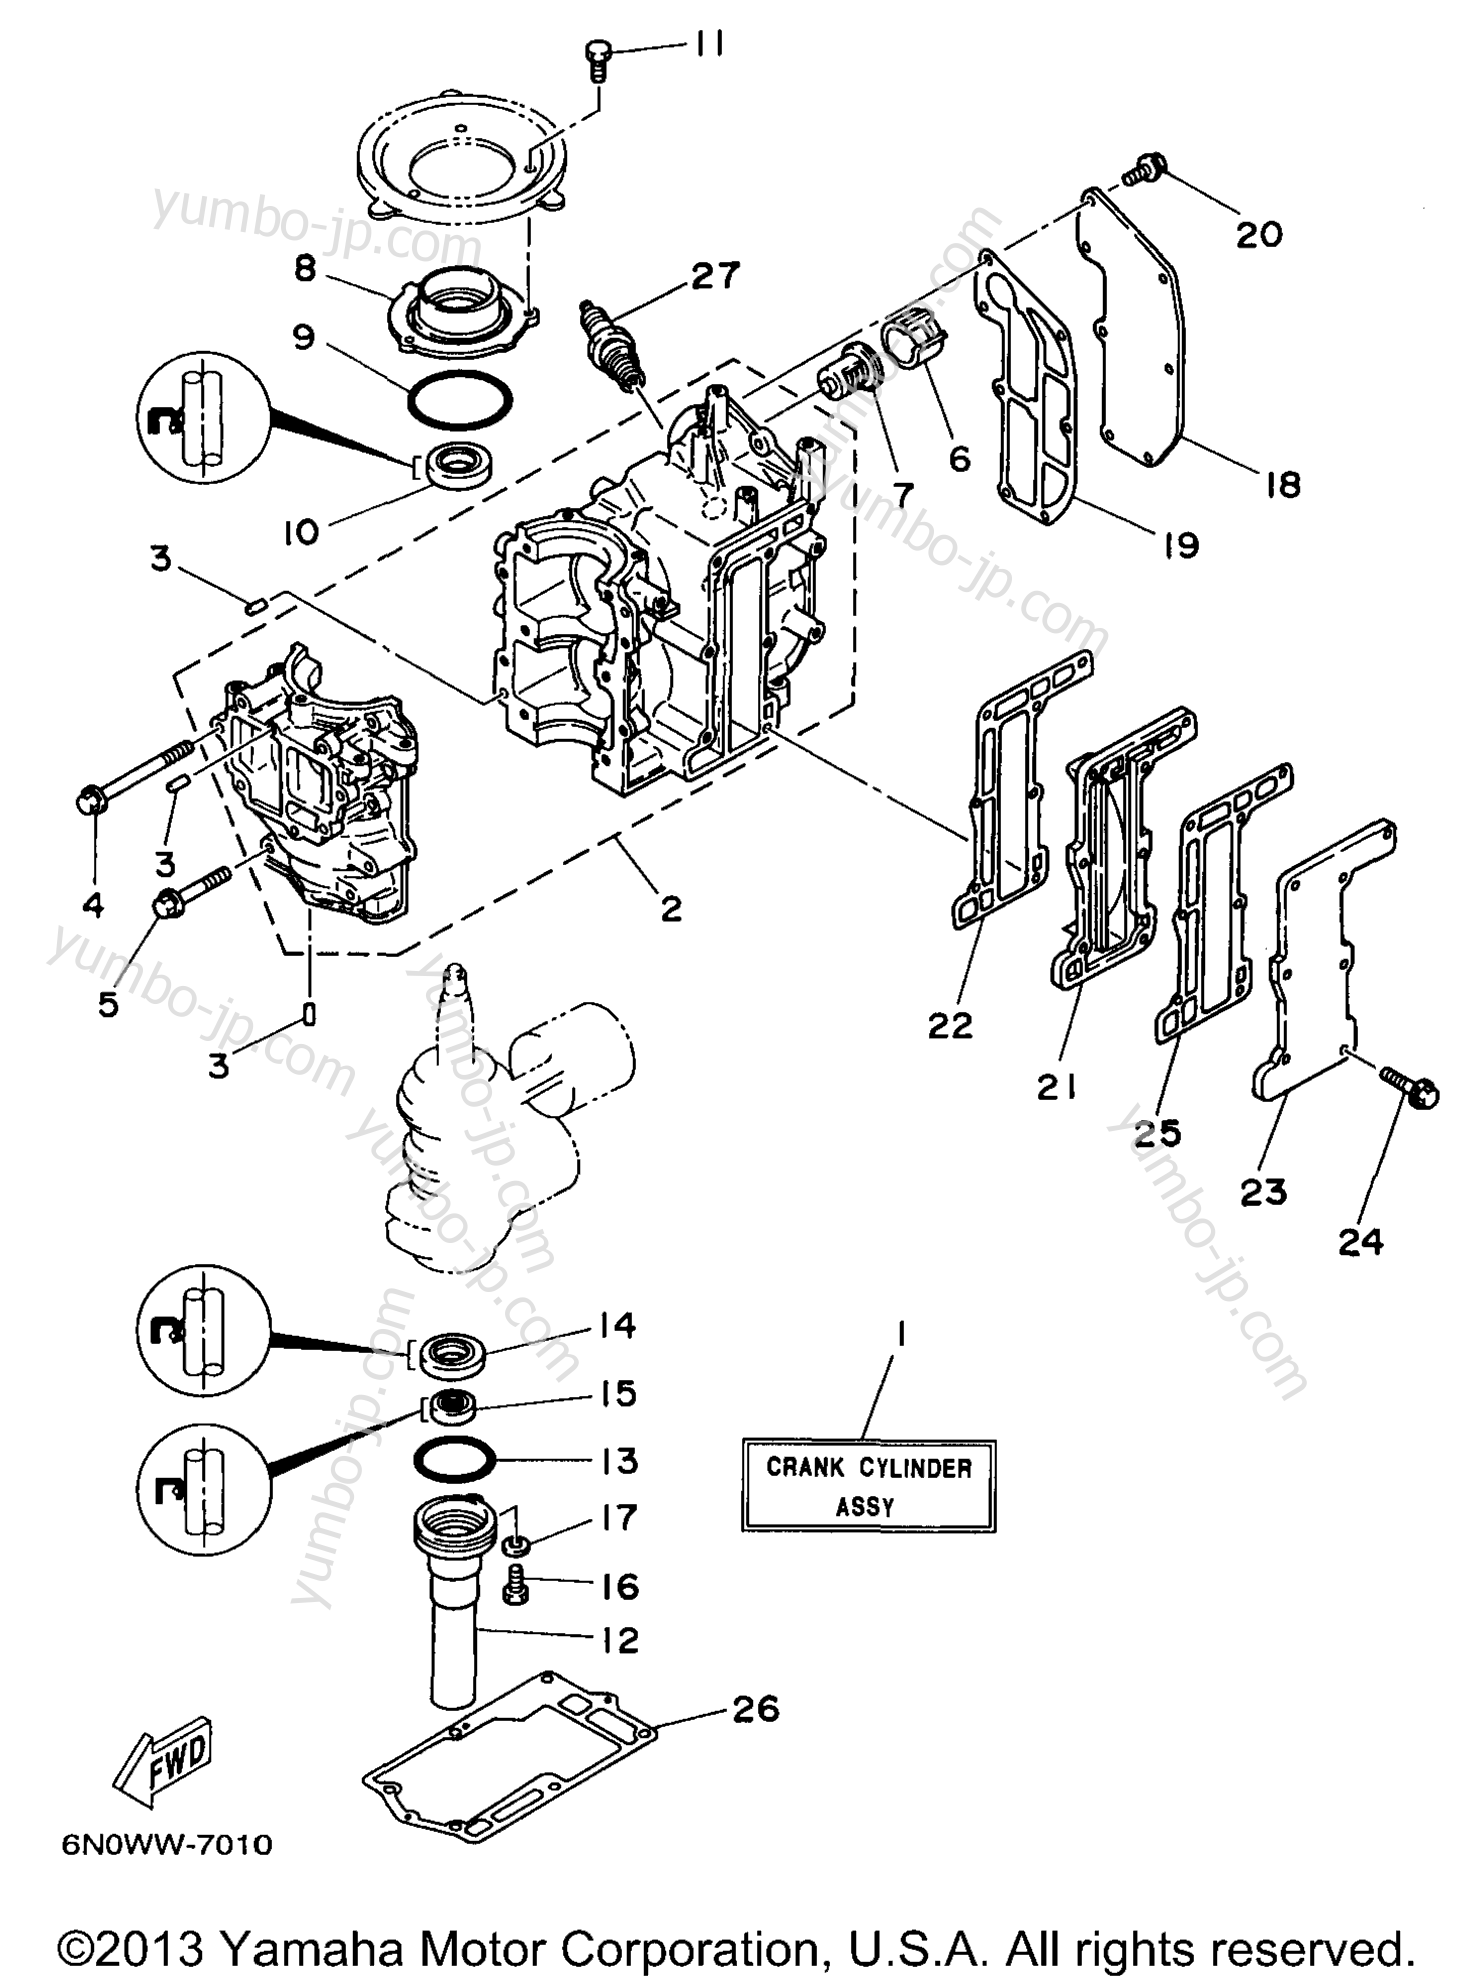 Cylinder Crankcase для лодочных моторов YAMAHA 6MSHV 1997 г.